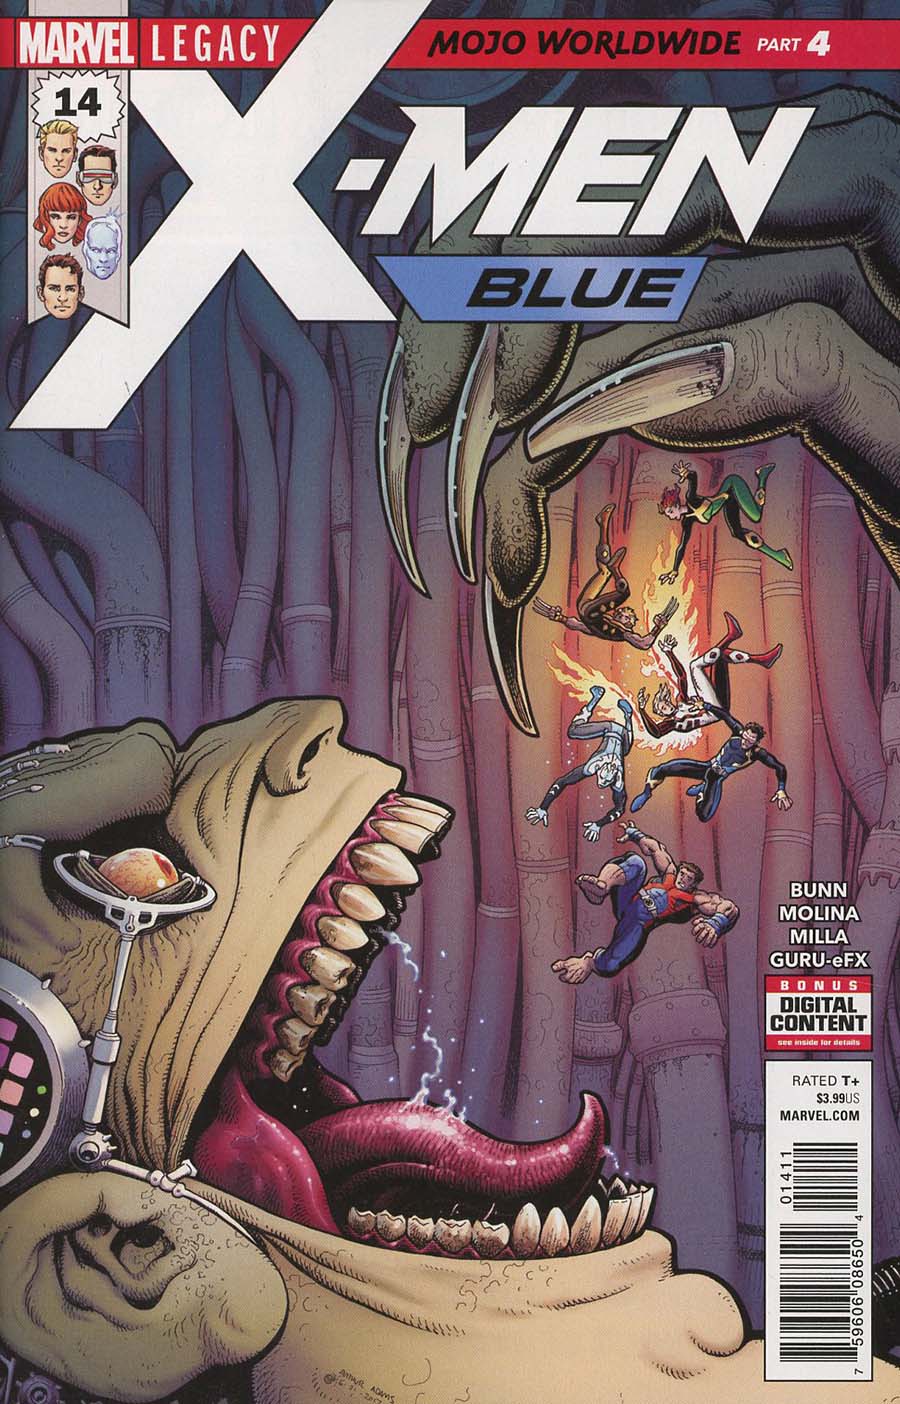 X-Men Blue #14 (Mojo Worldwide Part 4)(Marvel Legacy Tie-In)